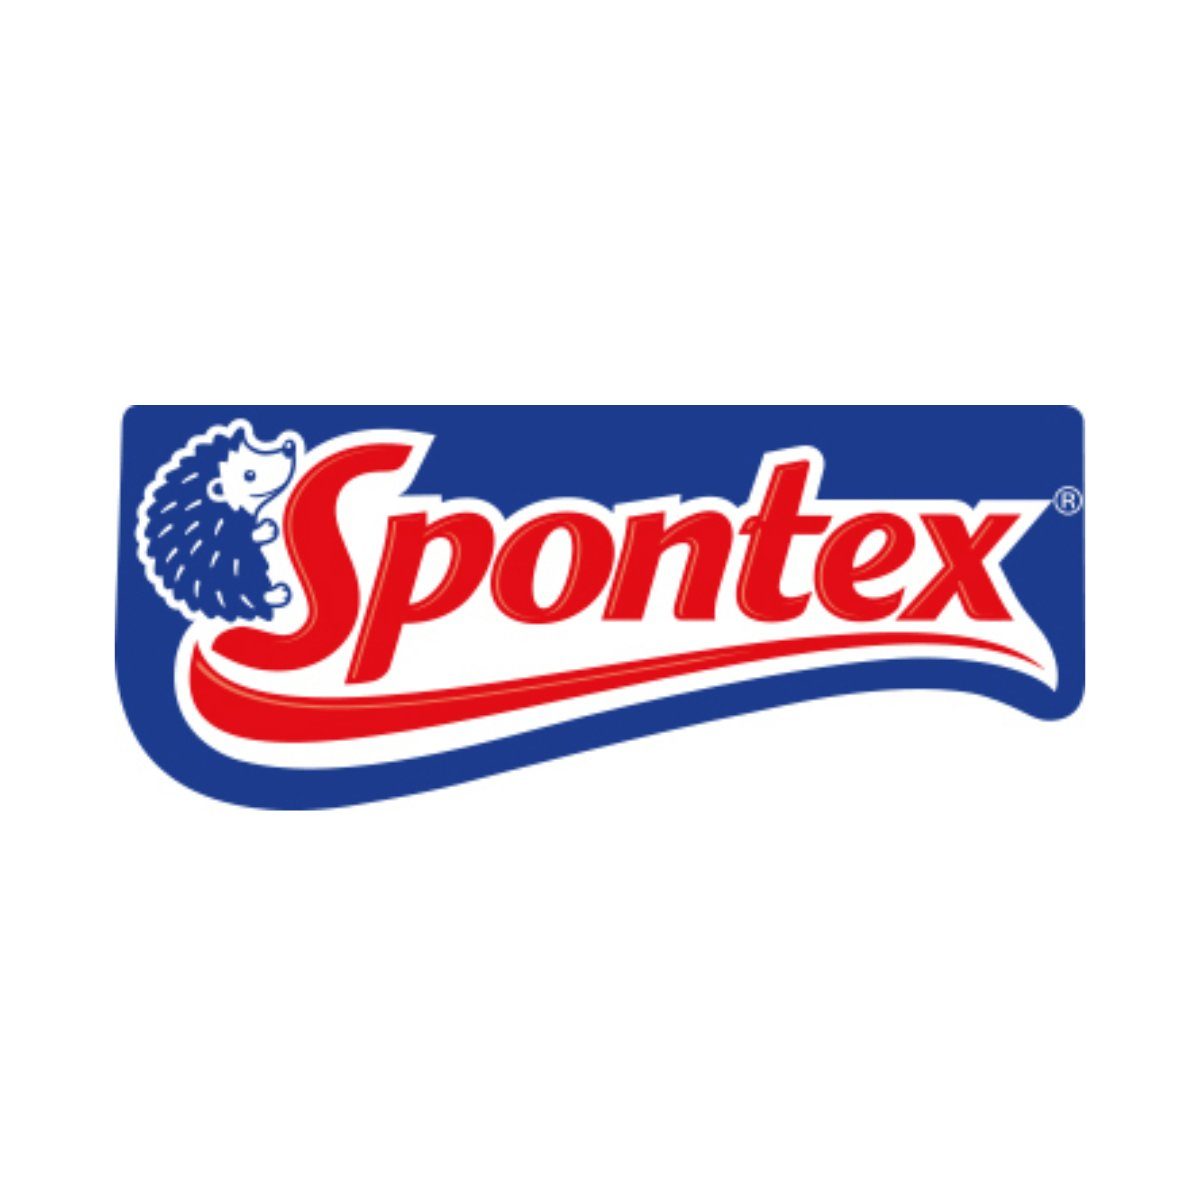 SPONTEX Gartenhandschuhe